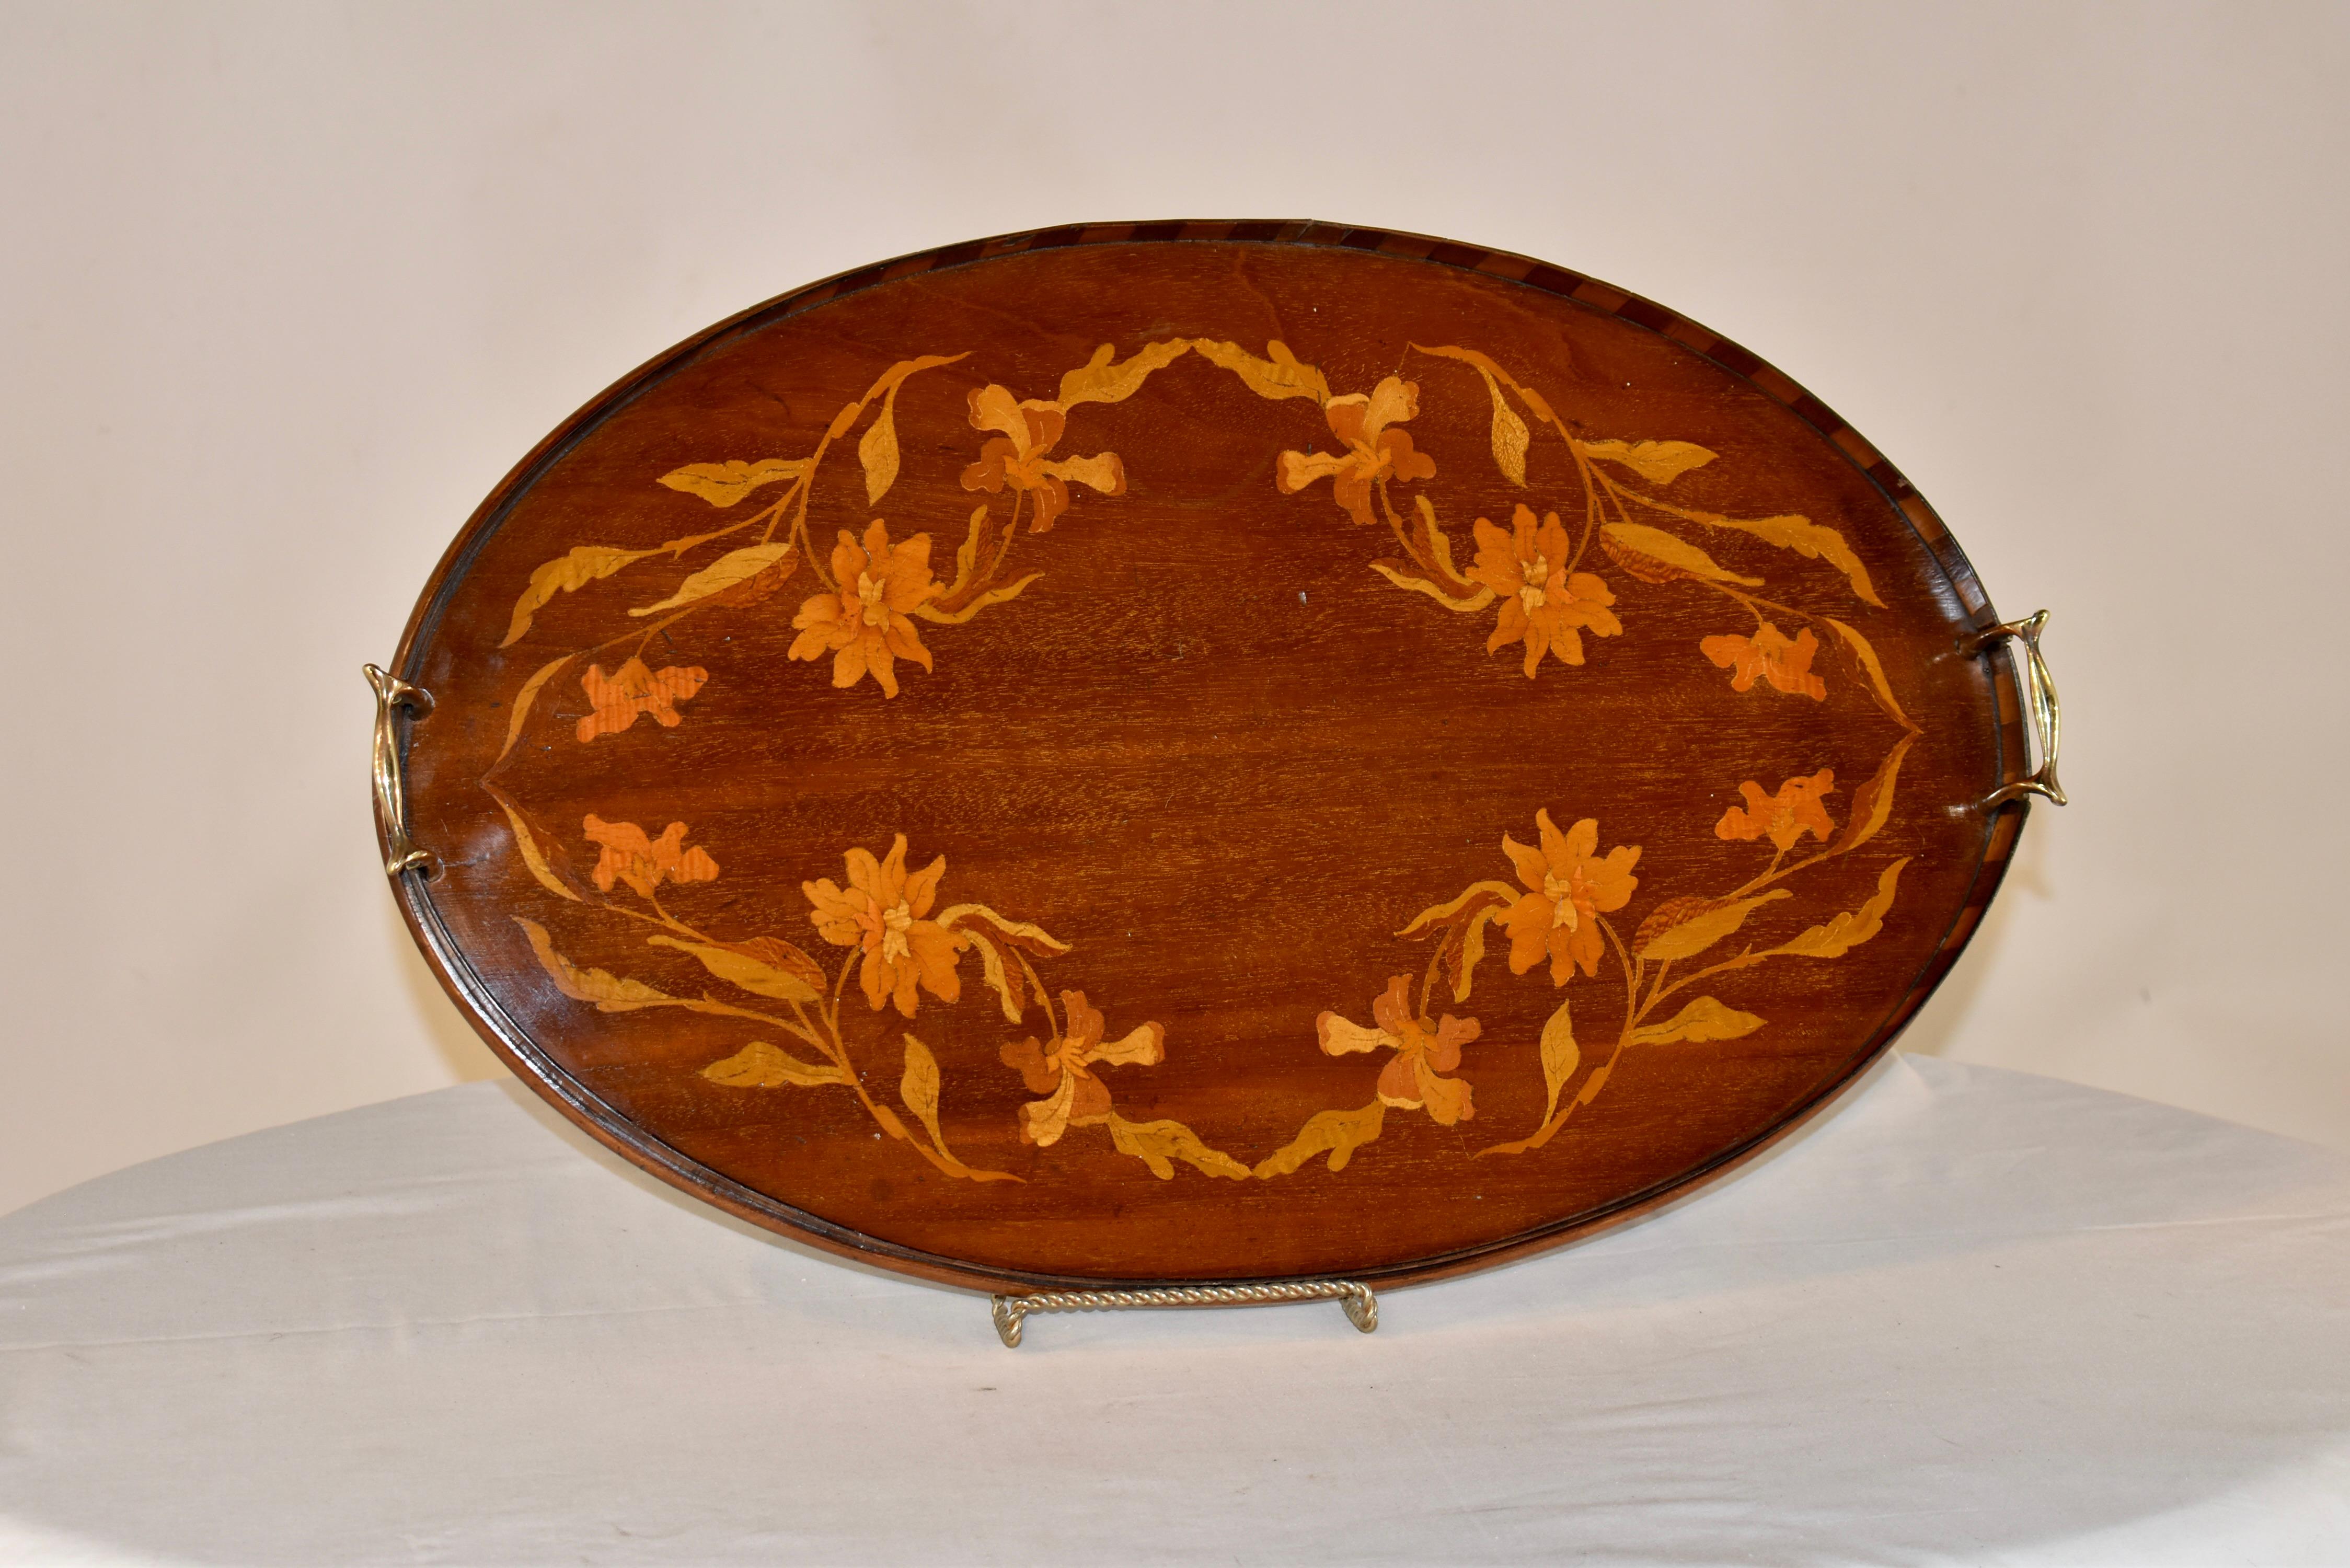 Mahagoni-Tablett aus England aus dem 19. Jahrhundert mit Intarsien in einem schönen Muster aus Blumen und Ranken. Das Tablett ist mit einer Galerie versehen, die in einem schönen Kontrast aus dunklem und hellem Mahagoni gehalten ist, was das Design